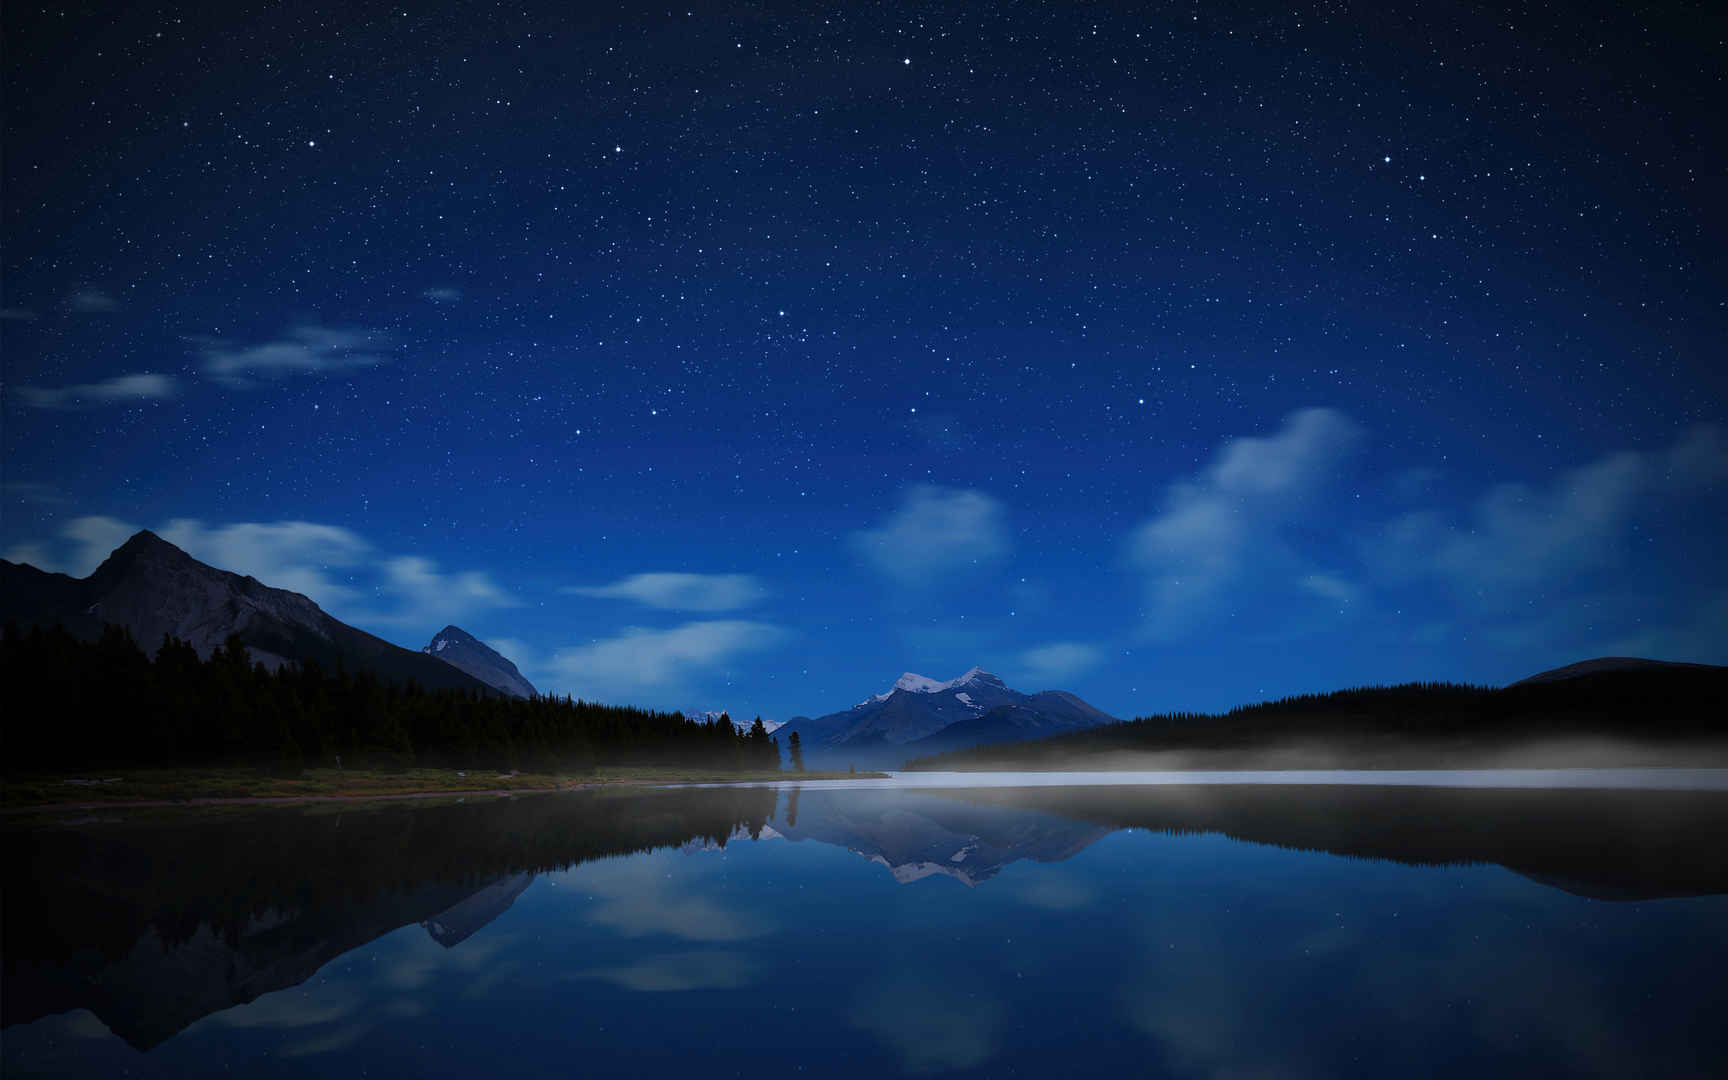 加拿大 贾斯珀国家公园 玛琳湖 星空壁纸